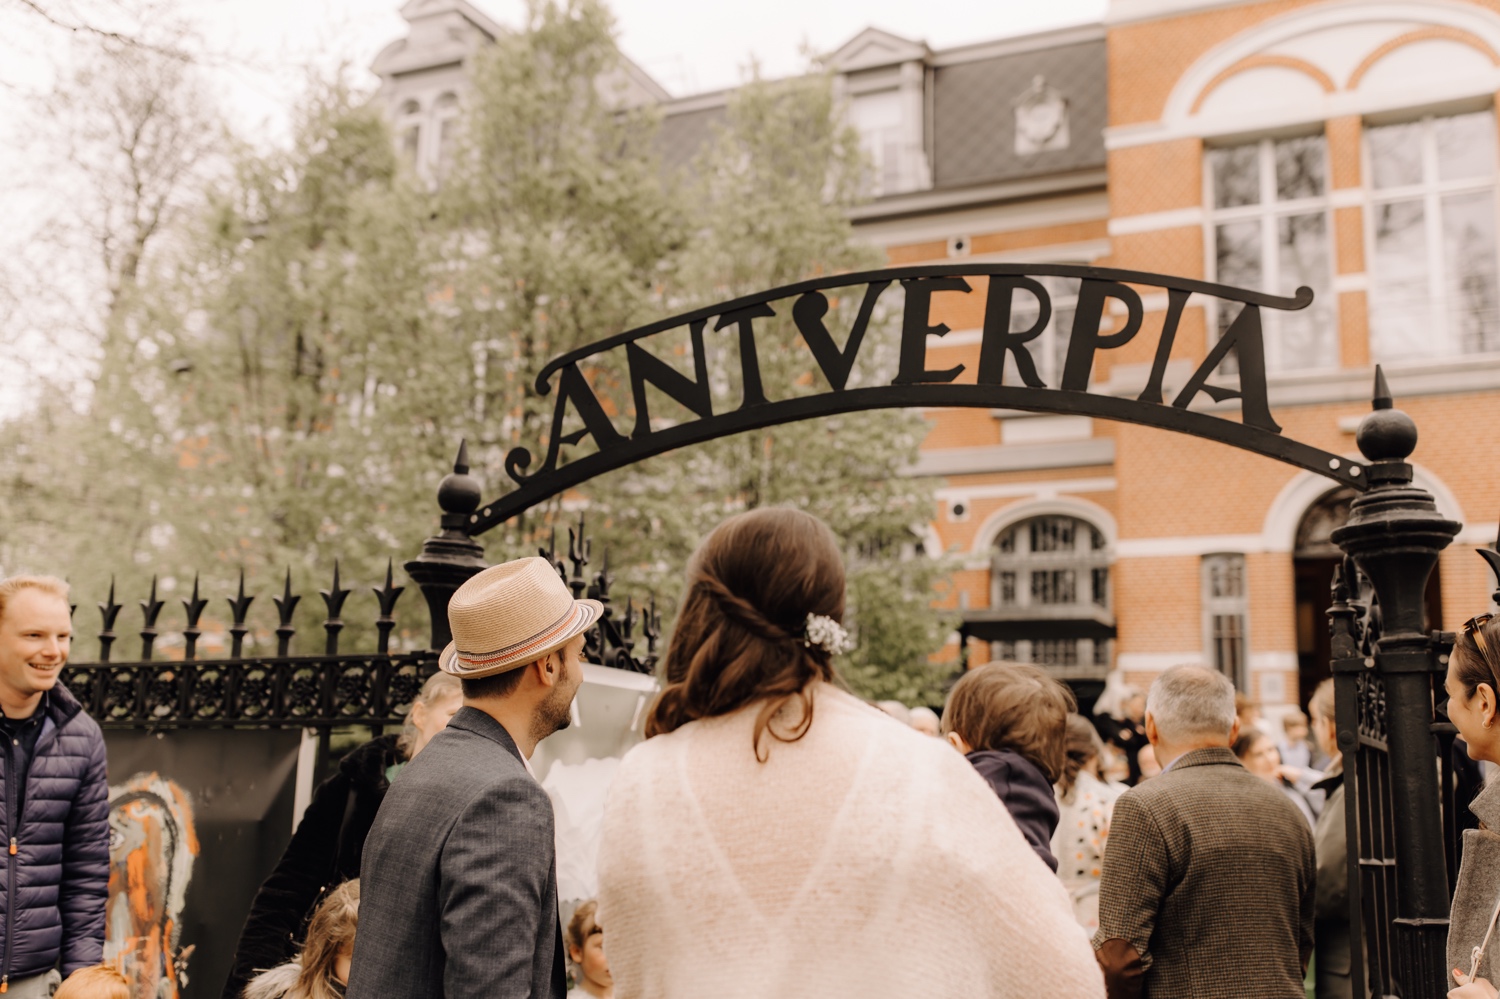 Huwelijksfotograaf Limburg - bruidspaar wandelt stadhuis Antverpia te Brasschaat binnen